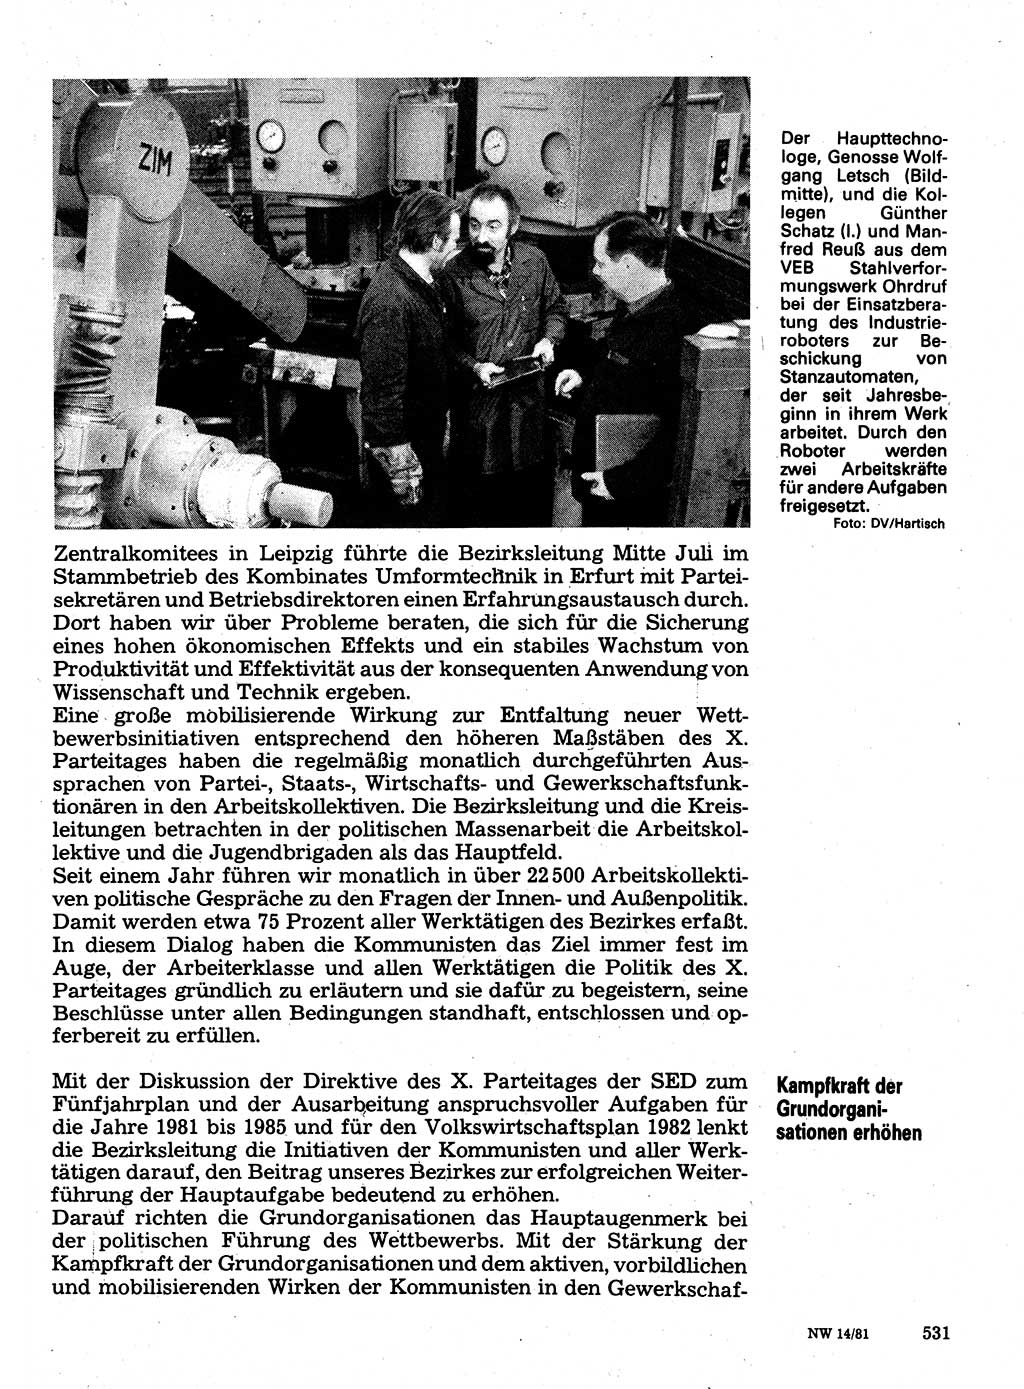 Neuer Weg (NW), Organ des Zentralkomitees (ZK) der SED (Sozialistische Einheitspartei Deutschlands) für Fragen des Parteilebens, 36. Jahrgang [Deutsche Demokratische Republik (DDR)] 1981, Seite 531 (NW ZK SED DDR 1981, S. 531)